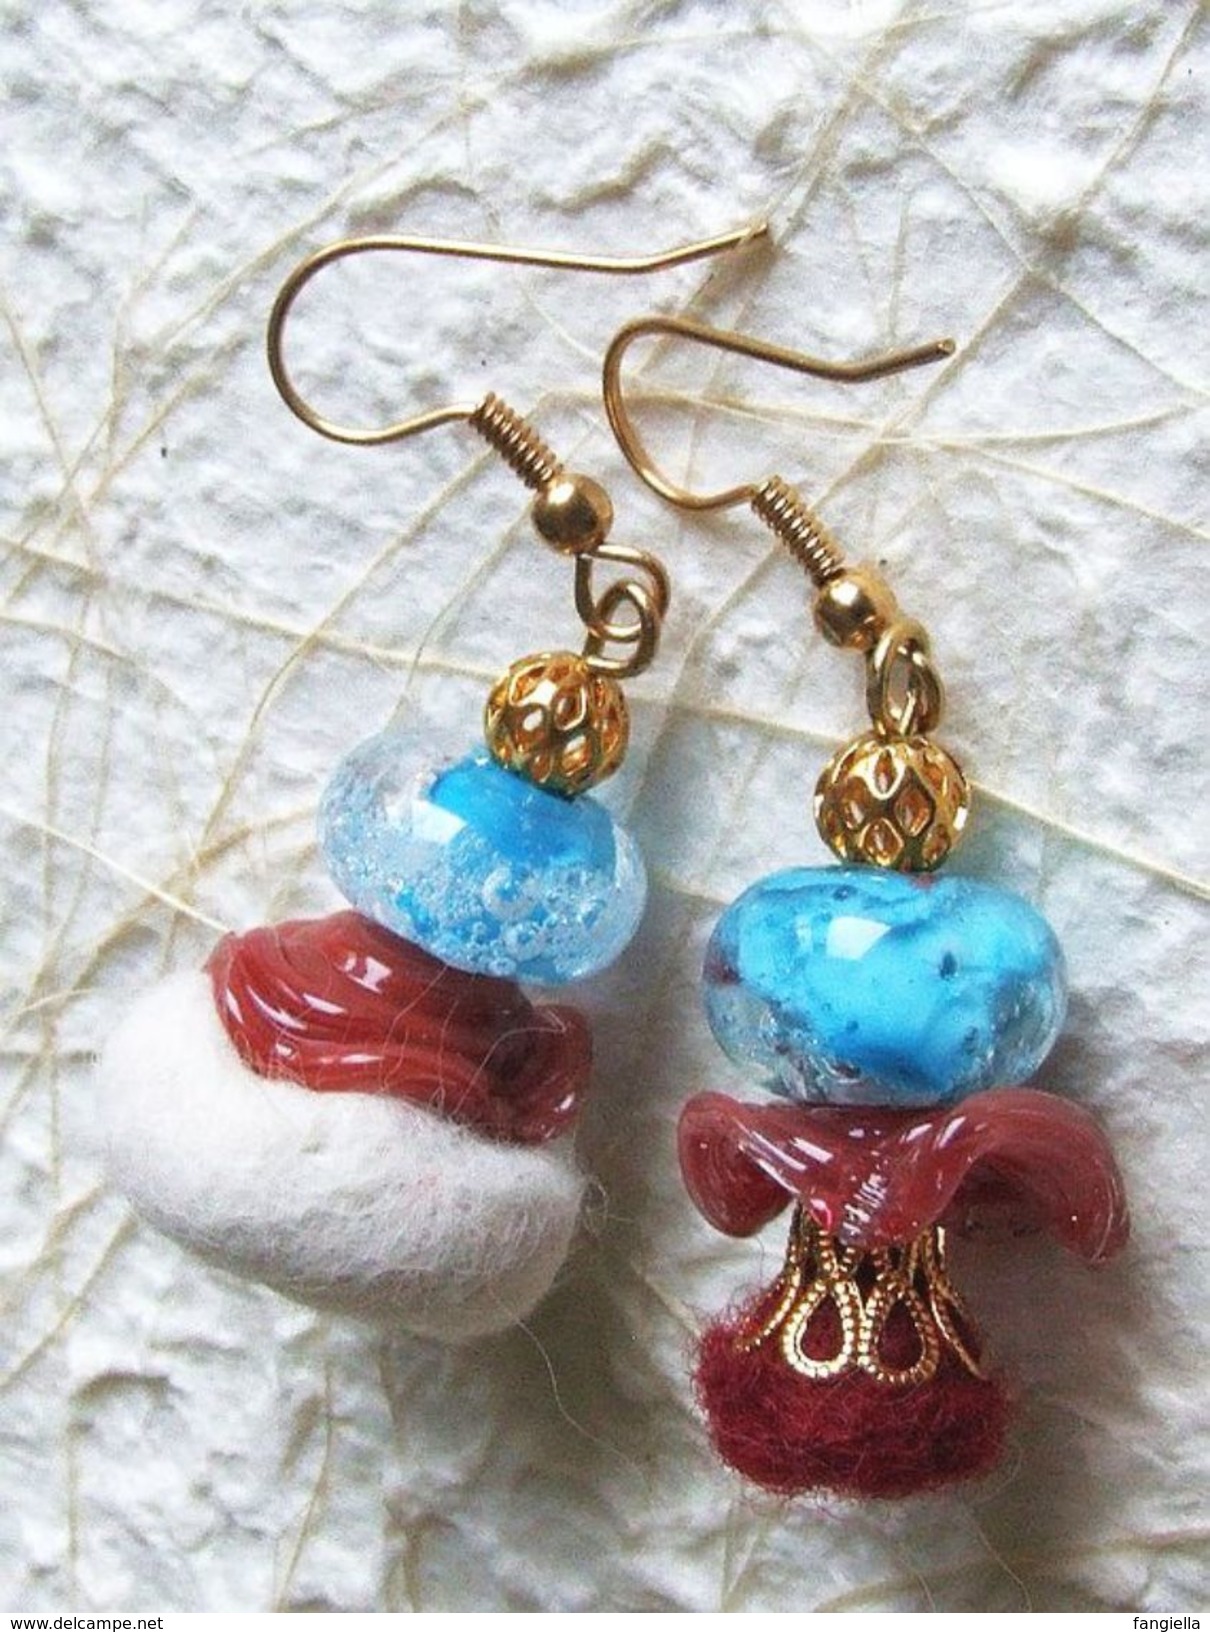 Boucles d'oreilles dissociées perles artisanales turquoise et bordeaux en verre filé et laine feutrée à l'aiguille